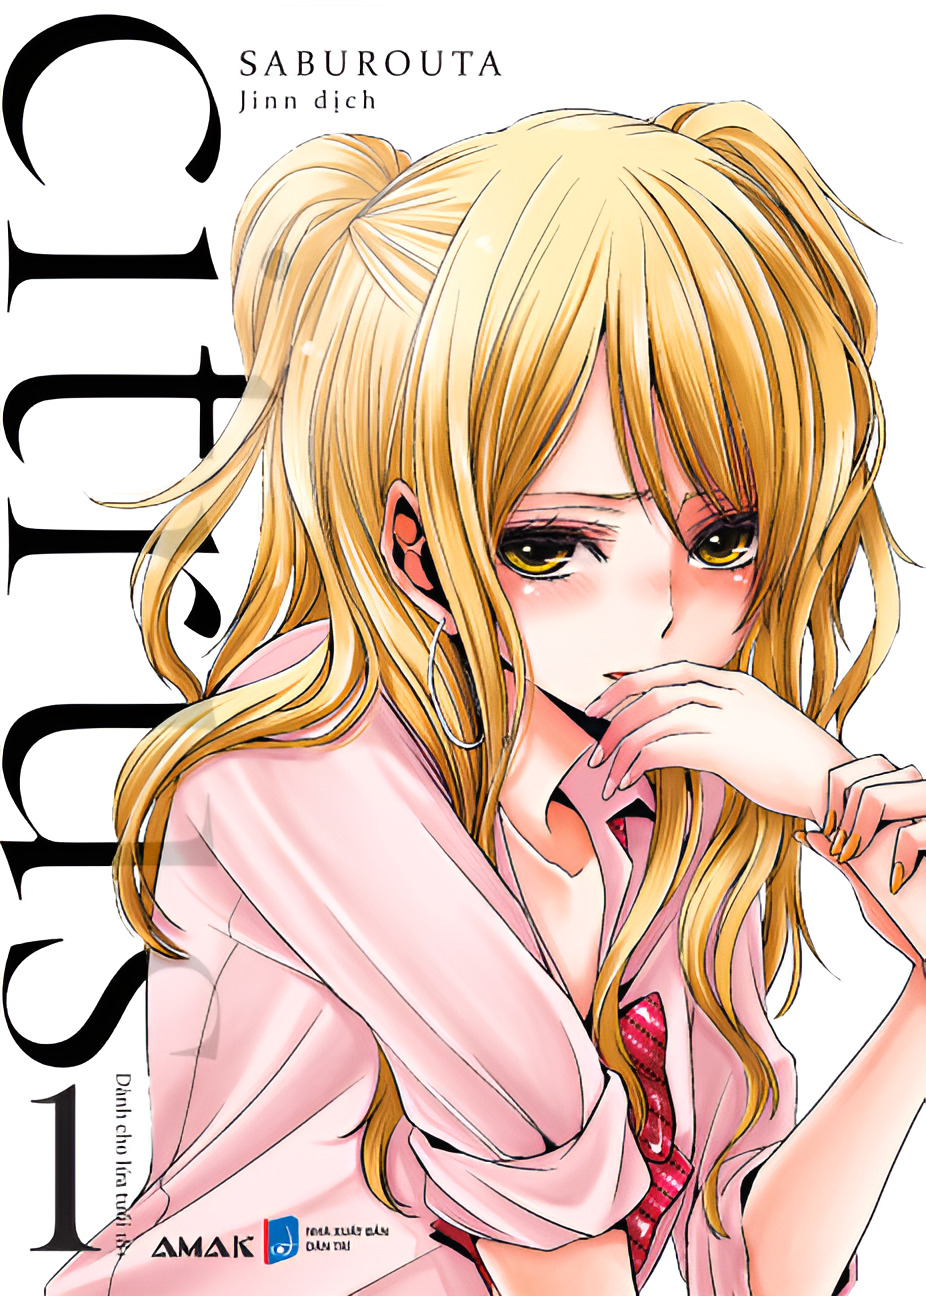 [Manga] [GL] Citrus - Tập 1- Amakbooks